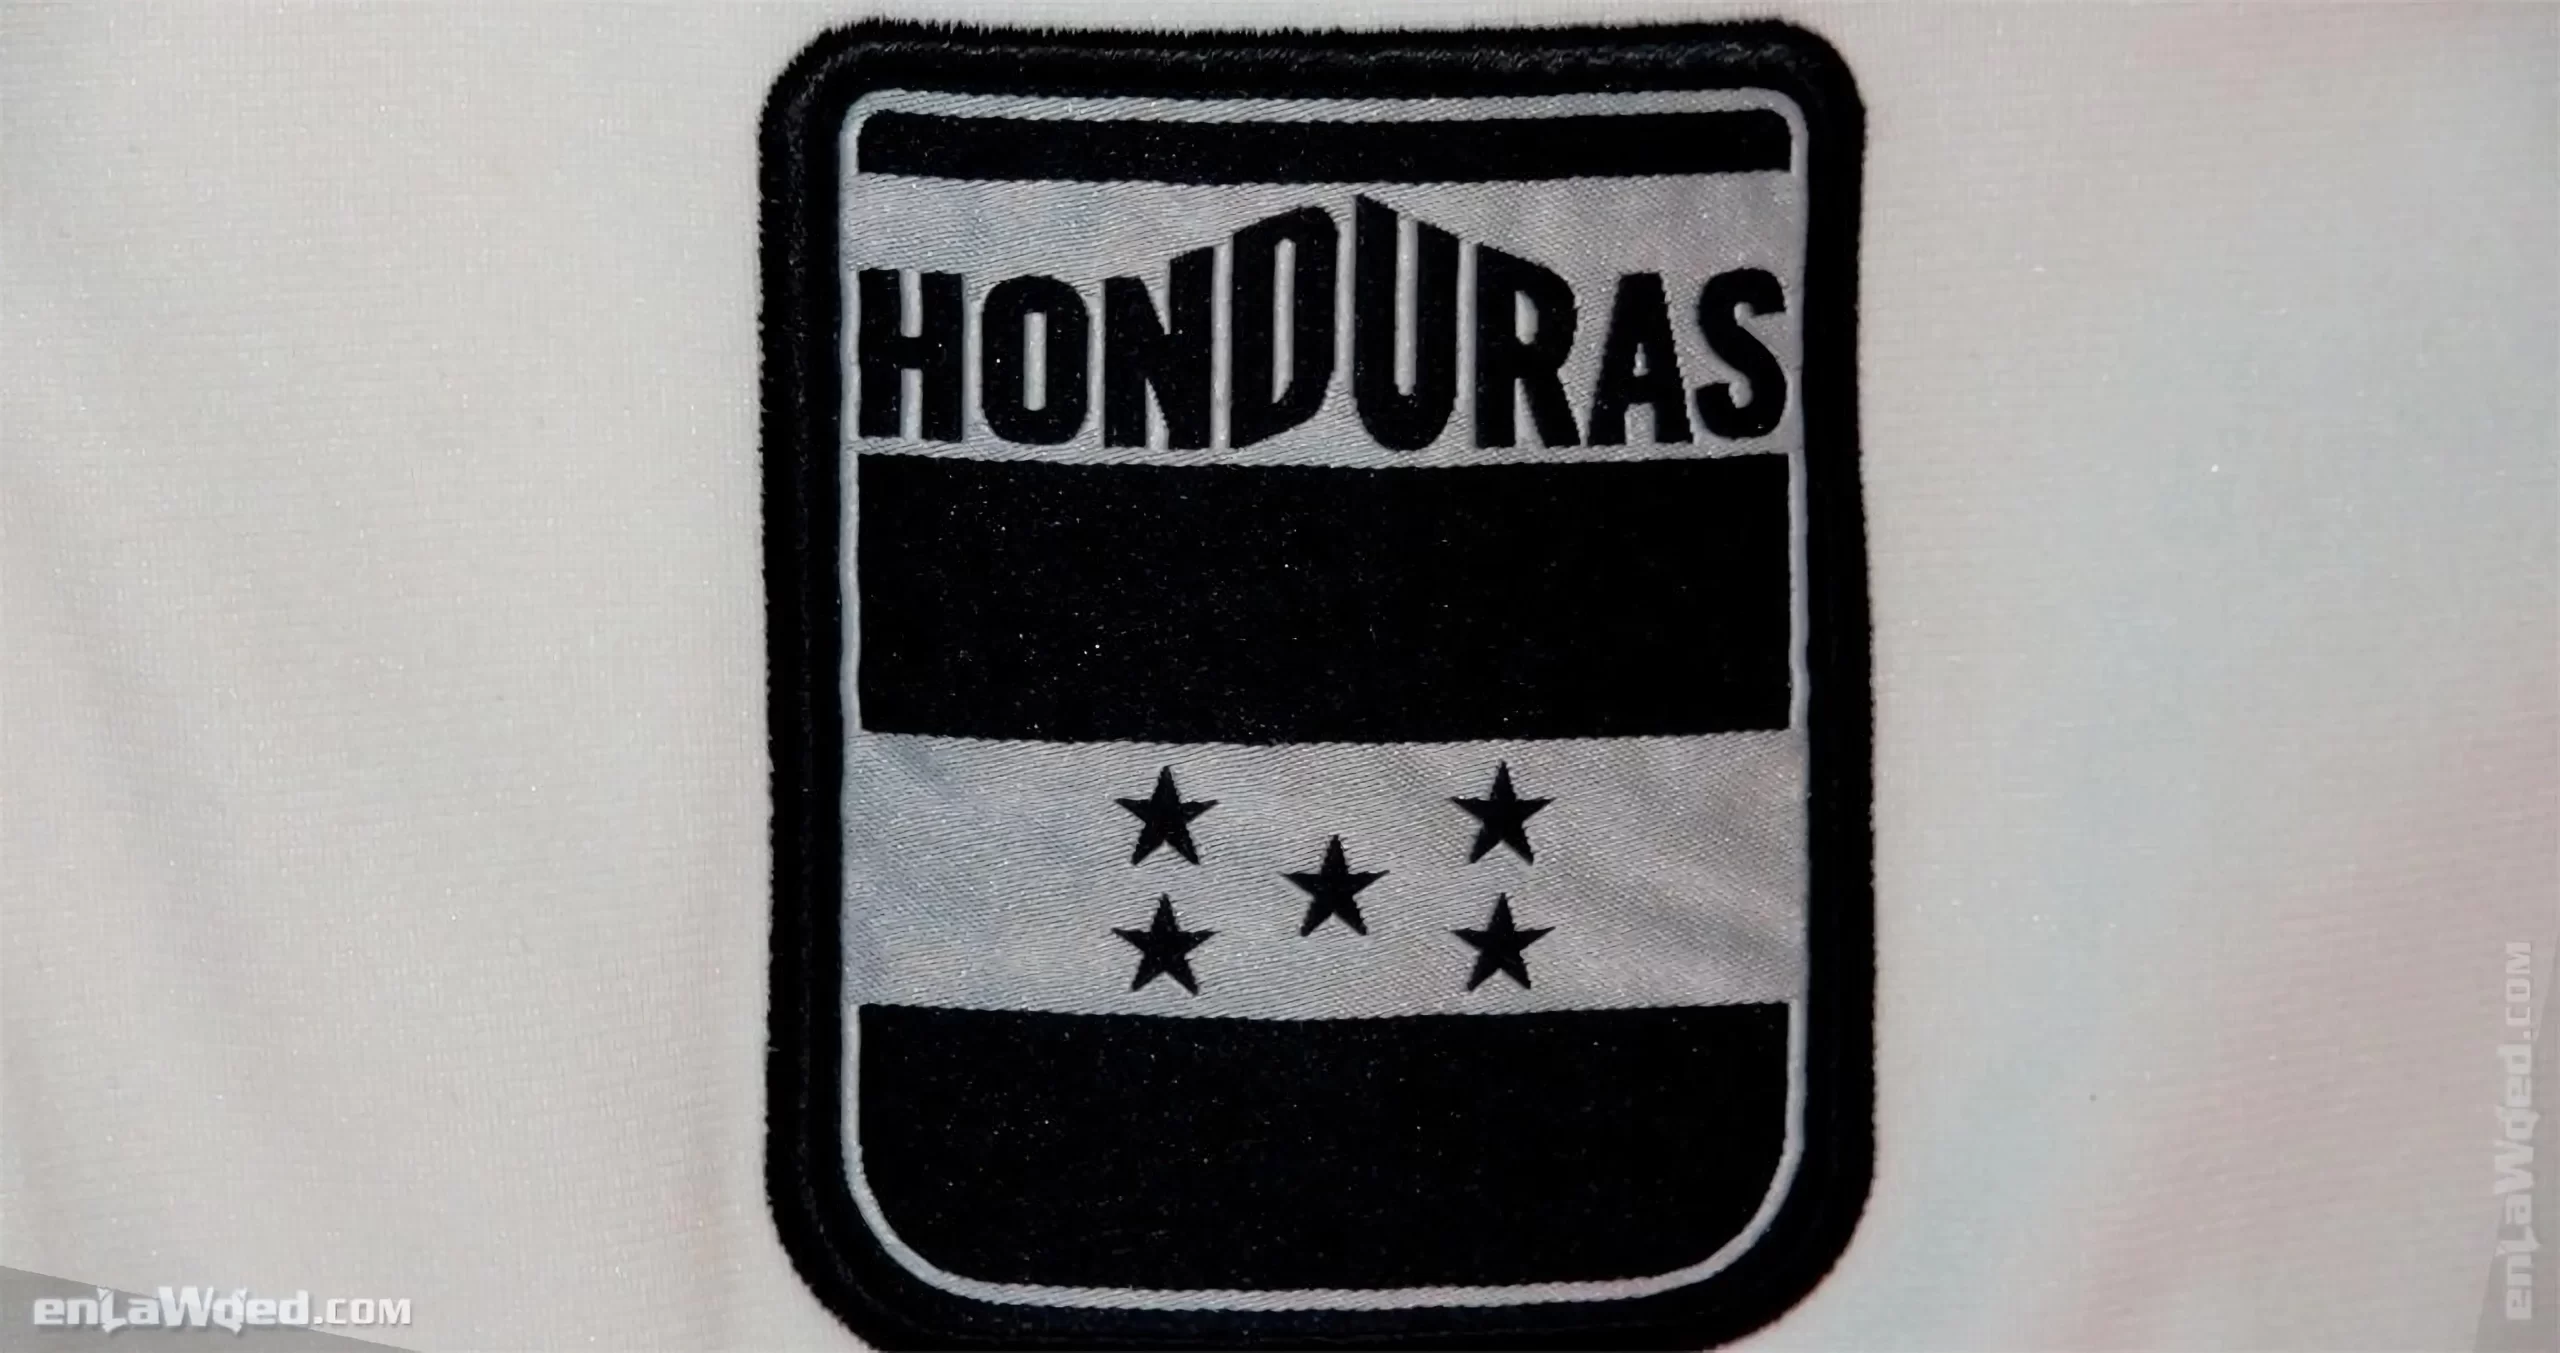 3rd interior view of the Adidas Originals Honduras Track Top